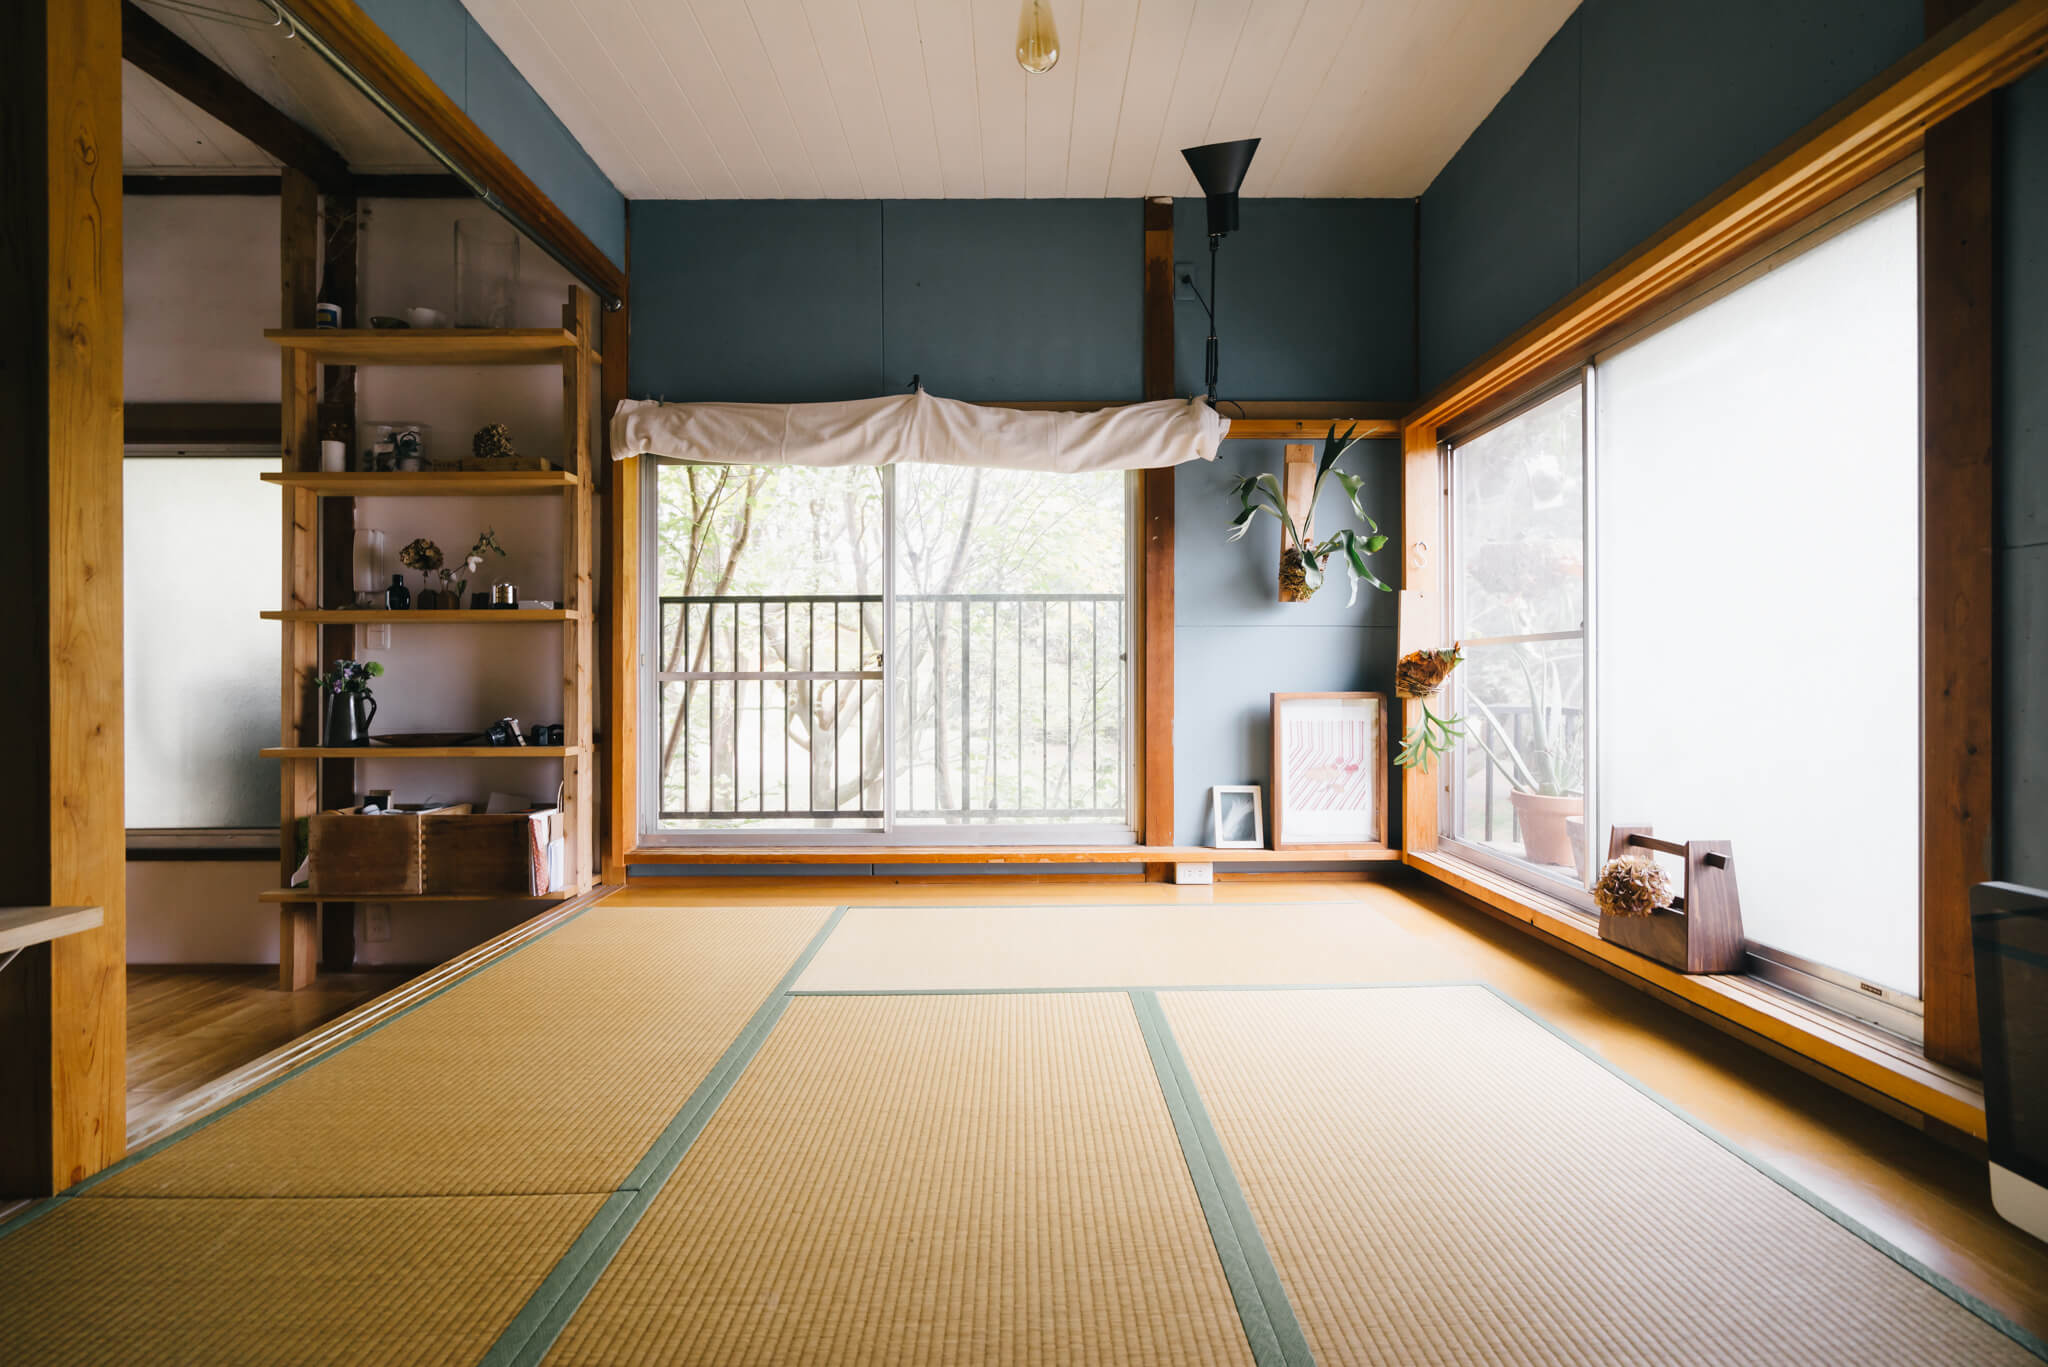 寝室として使っている畳の小上がりは、落ち着くブレーグレーの塗料を塗って、緩やかに空間を区切っています。